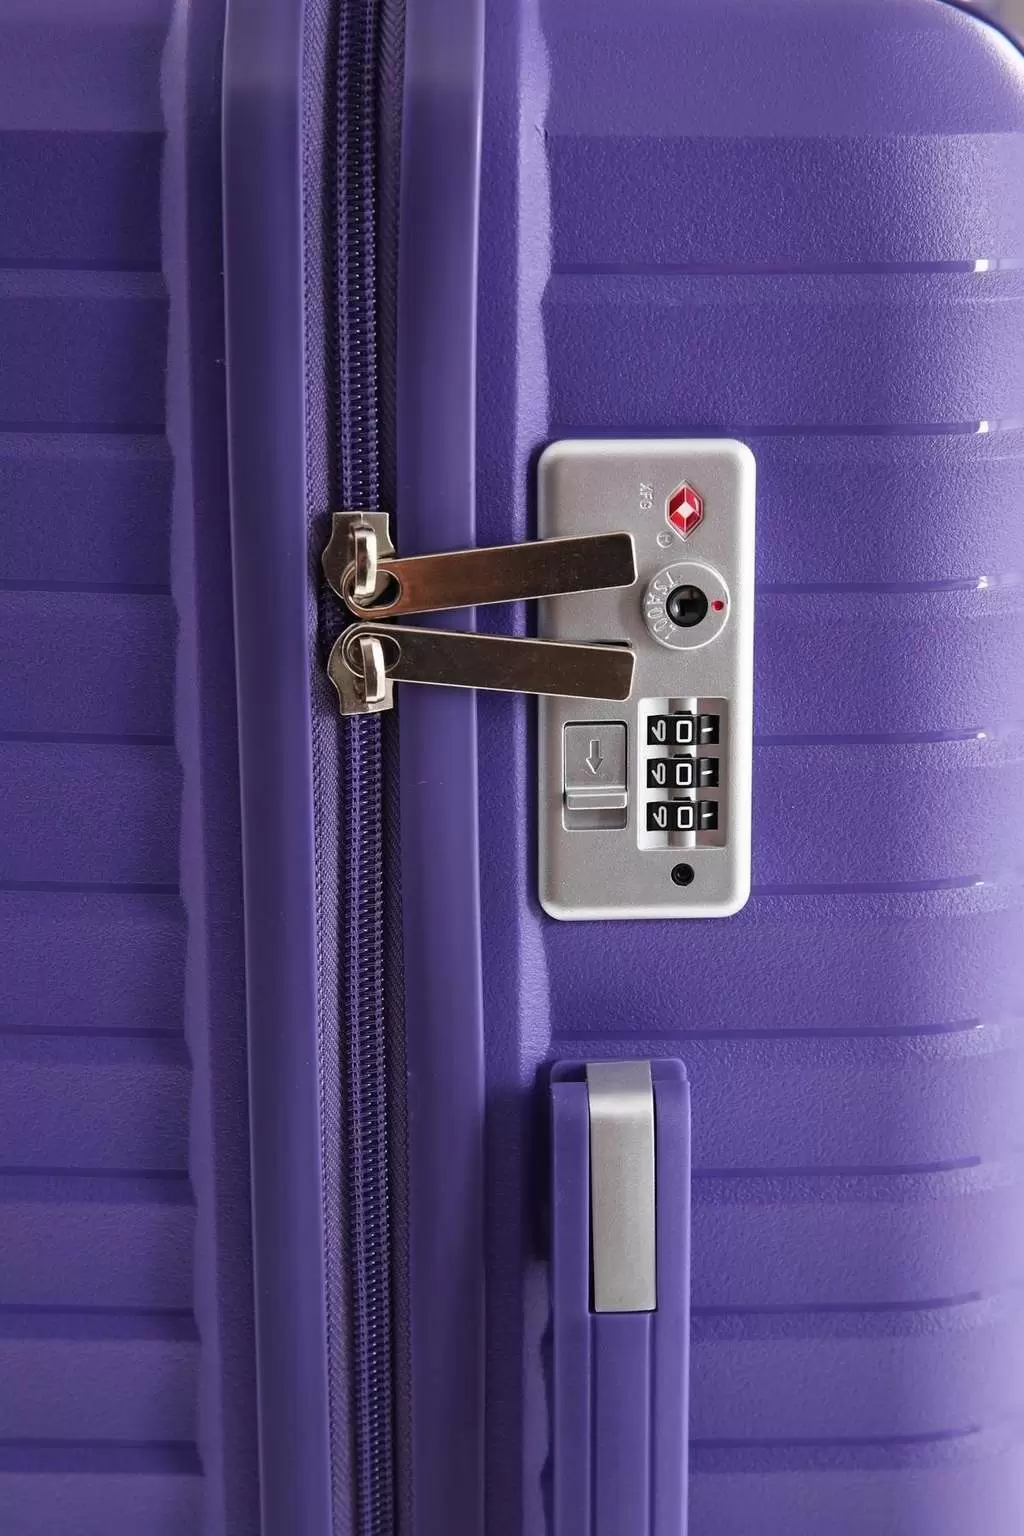 Комплект чемоданов CCS 5235 Set, фиолетовый